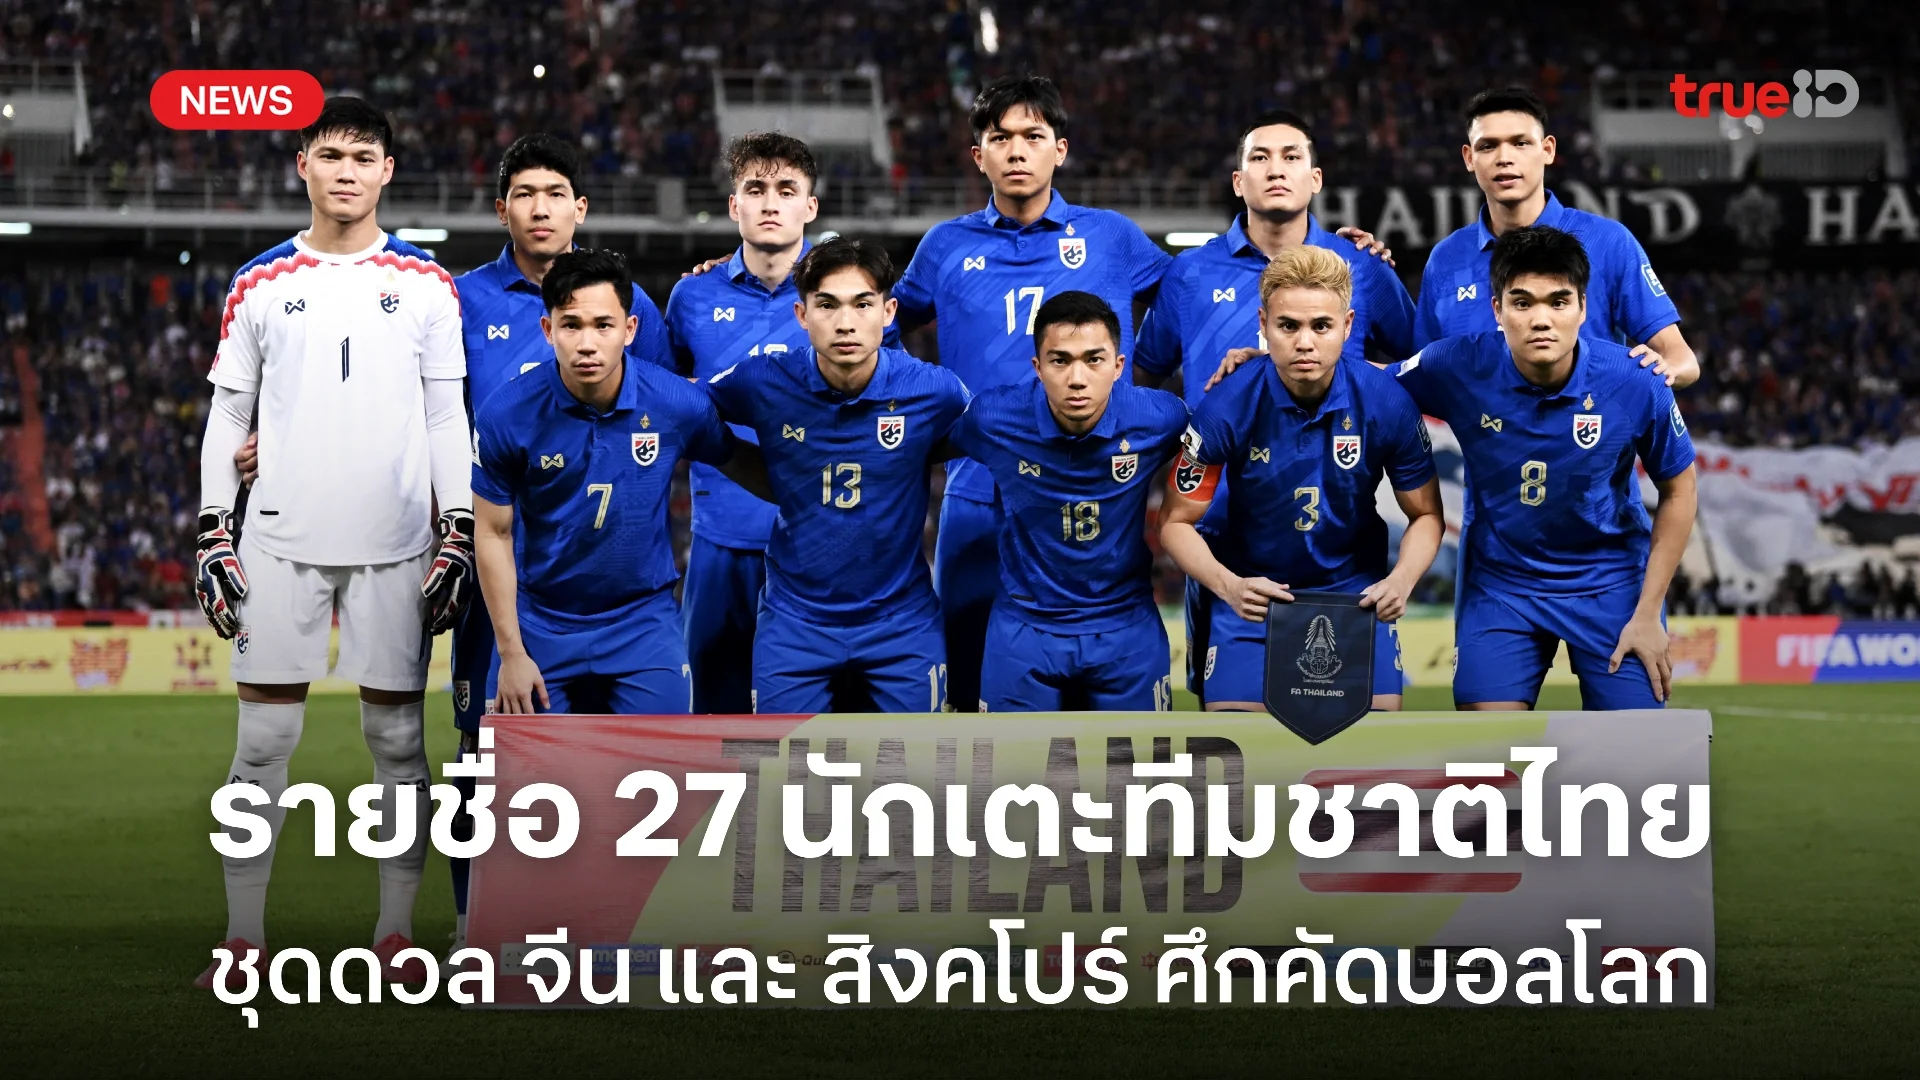 OFFICIAL : ประกาศรายชื่อ 27 นักเตะทีมชาติไทย ชน จีน-สิงคโปร์ คัดบอลโลก